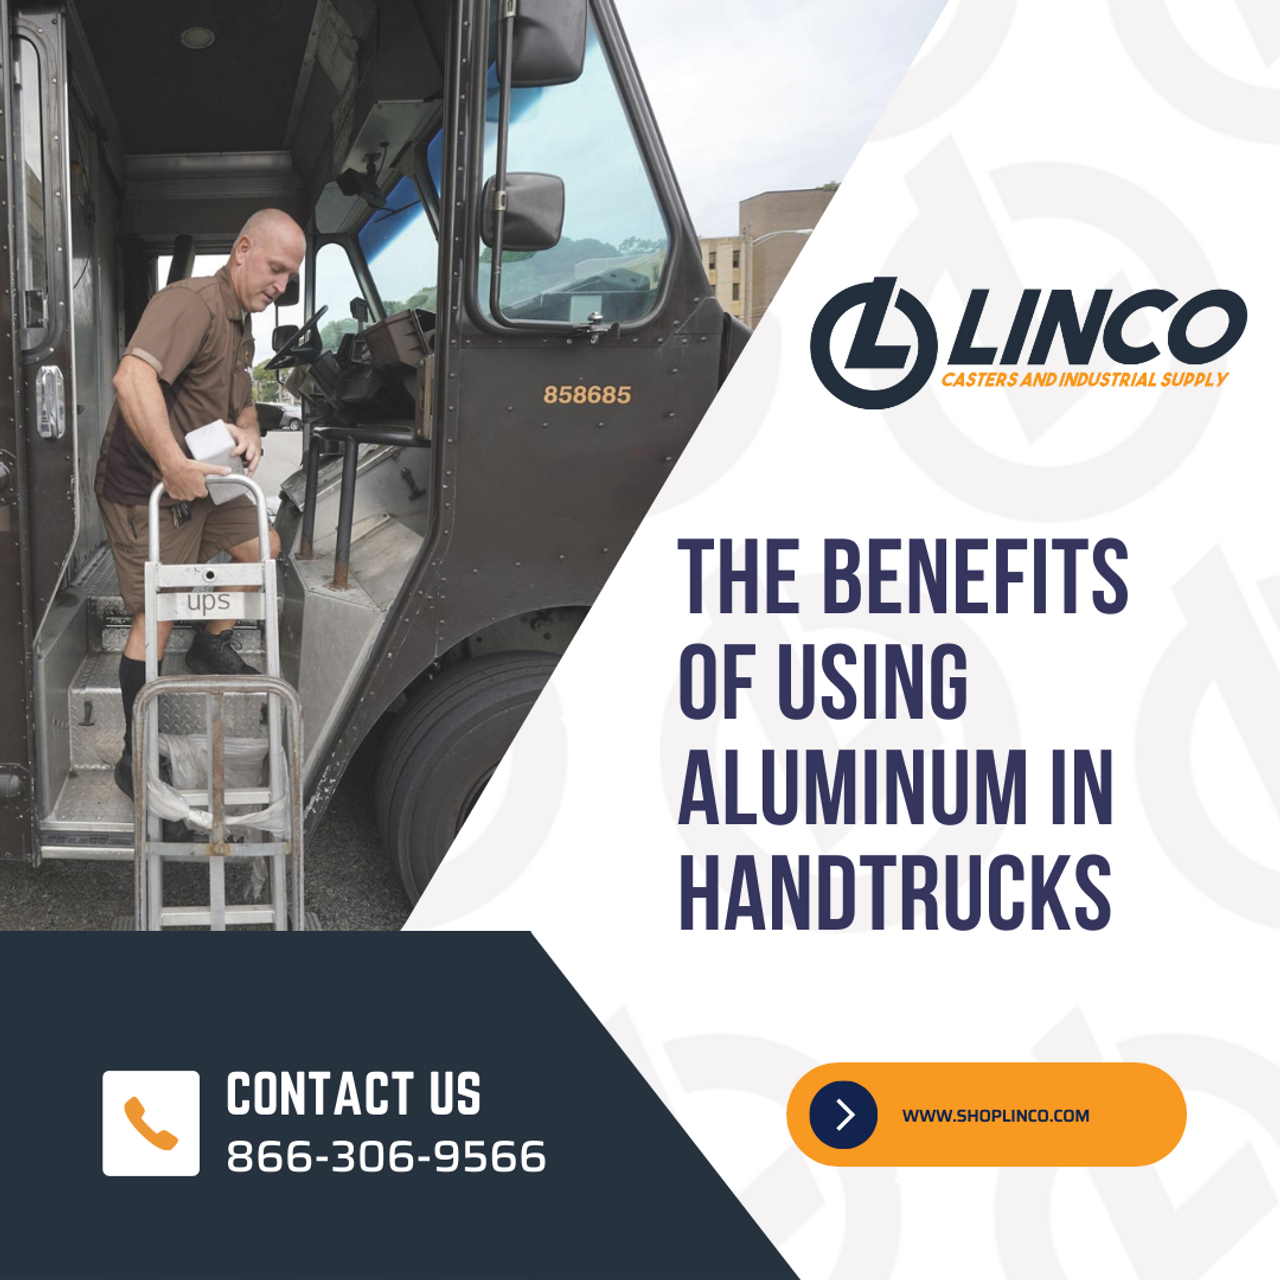 The Benefits of Using Aluminum in Handtrucks